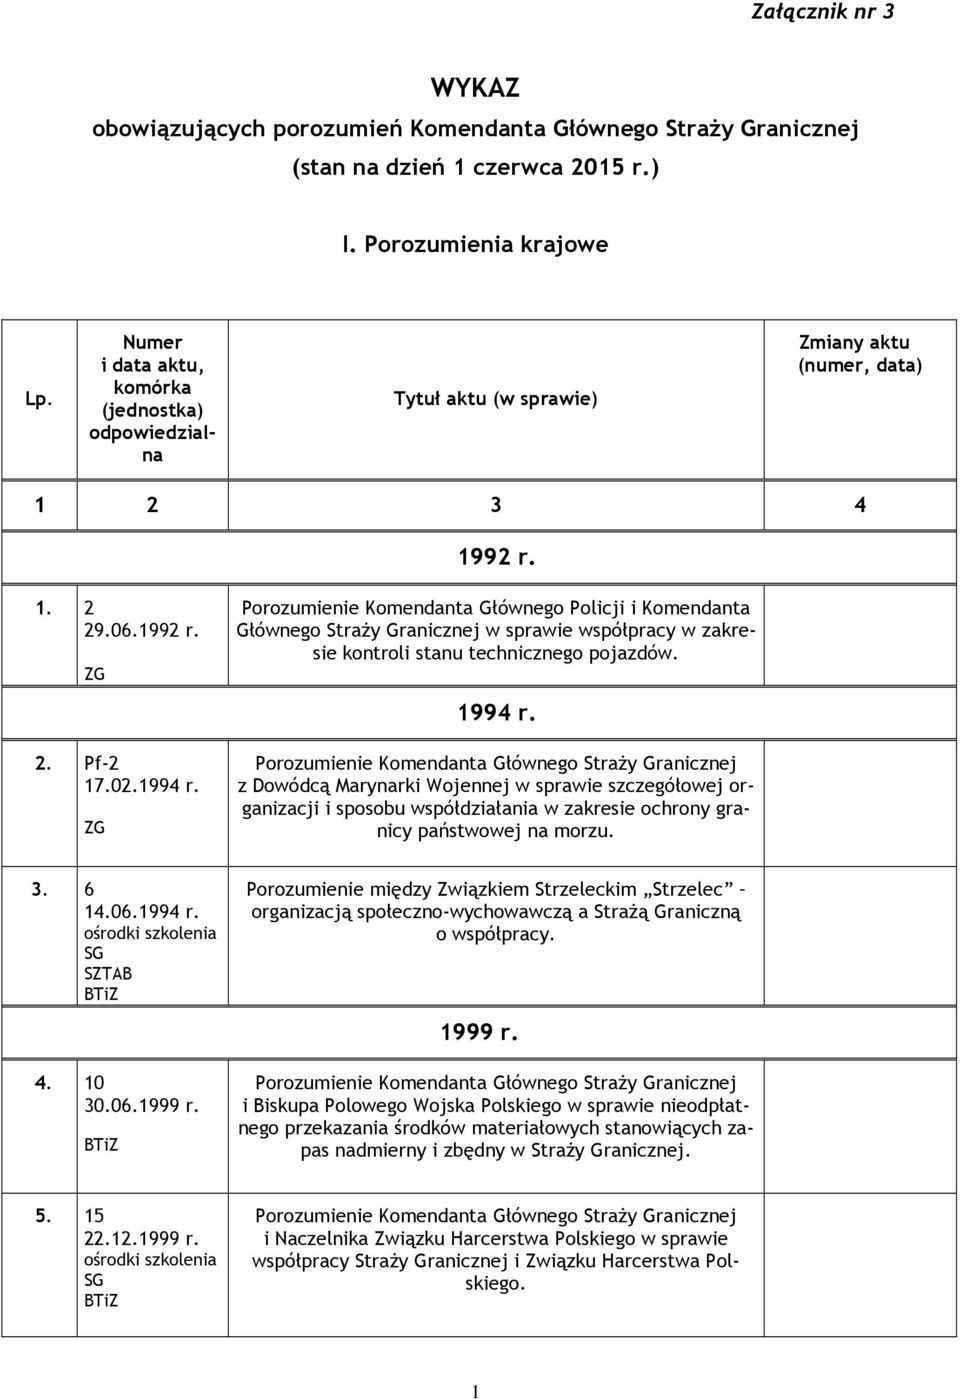 Porozumienie Komendanta Głównego Policji i Komendanta Głównego Straży Granicznej w sprawie współpracy w zakresie kontroli stanu technicznego pojazdów. 1994 r.